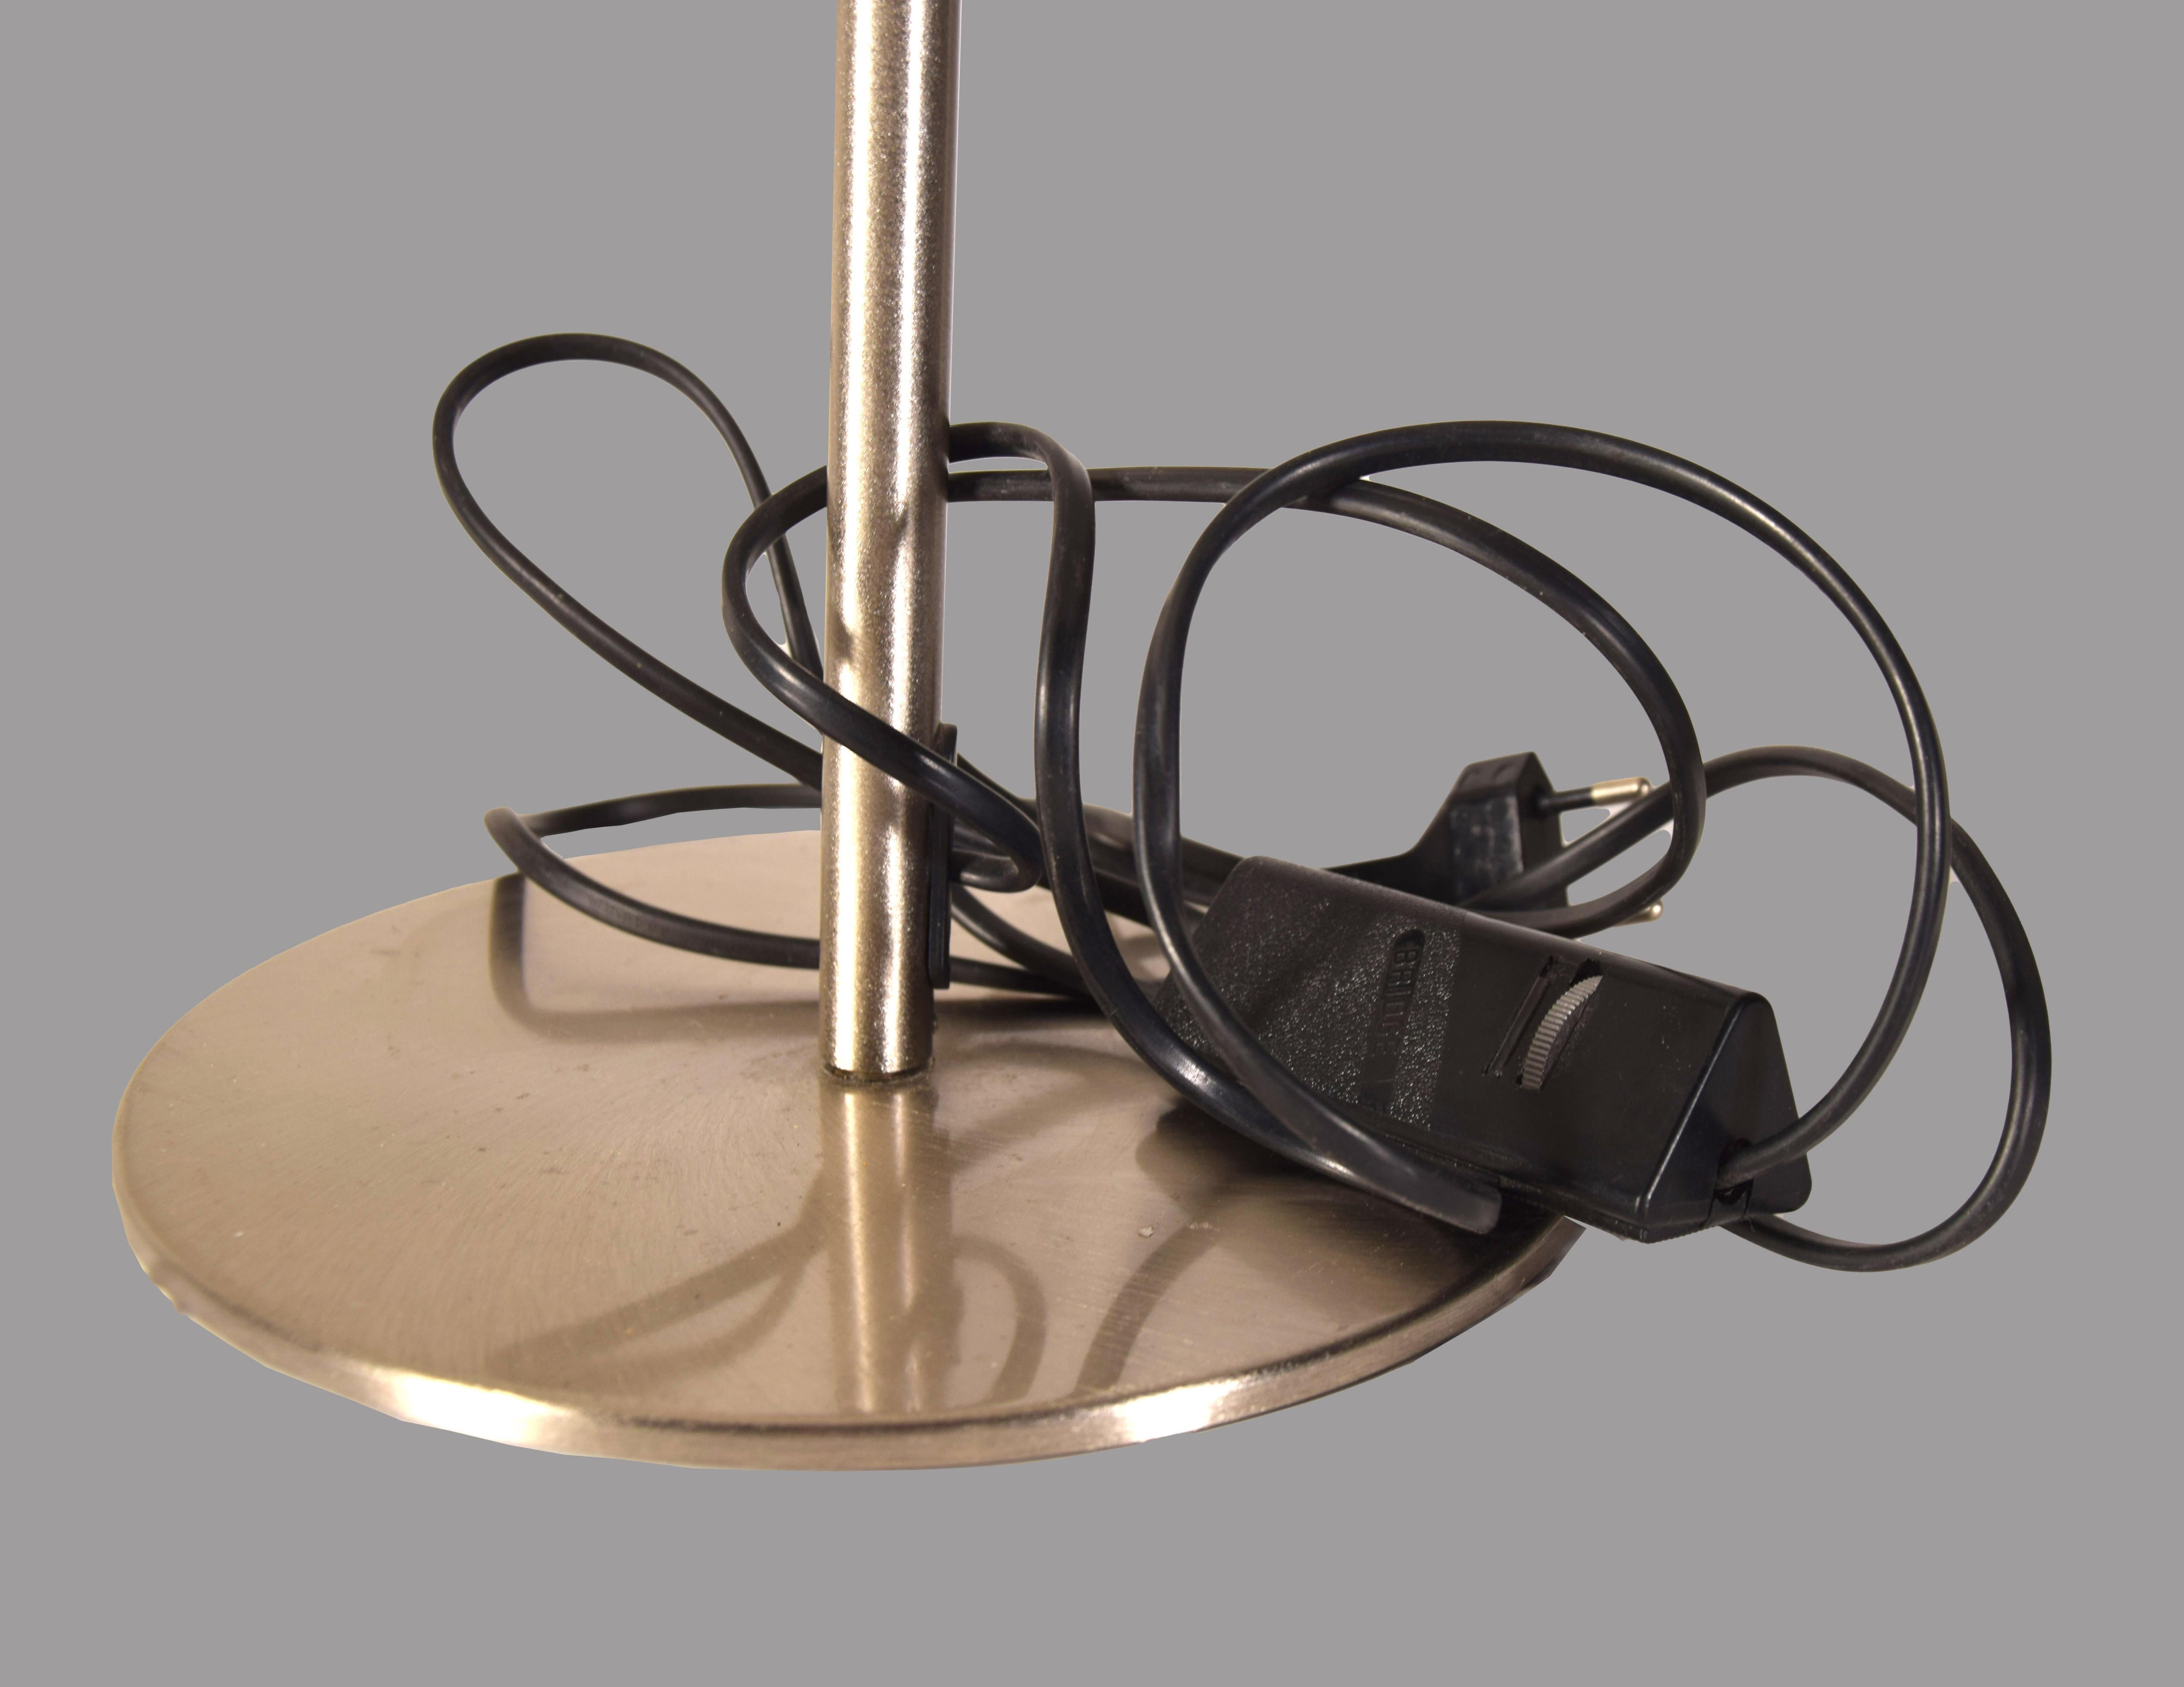 La lampe de table Leucos est une lampe à la mode réalisée dans les années 1980 par Leucos.

Lampe de table circulaire fabriquée à la main en métal chromé et en verre. 

Label original de l'entreprise.

Dimensions : cm 21 x 45 x 21. 

En très bon